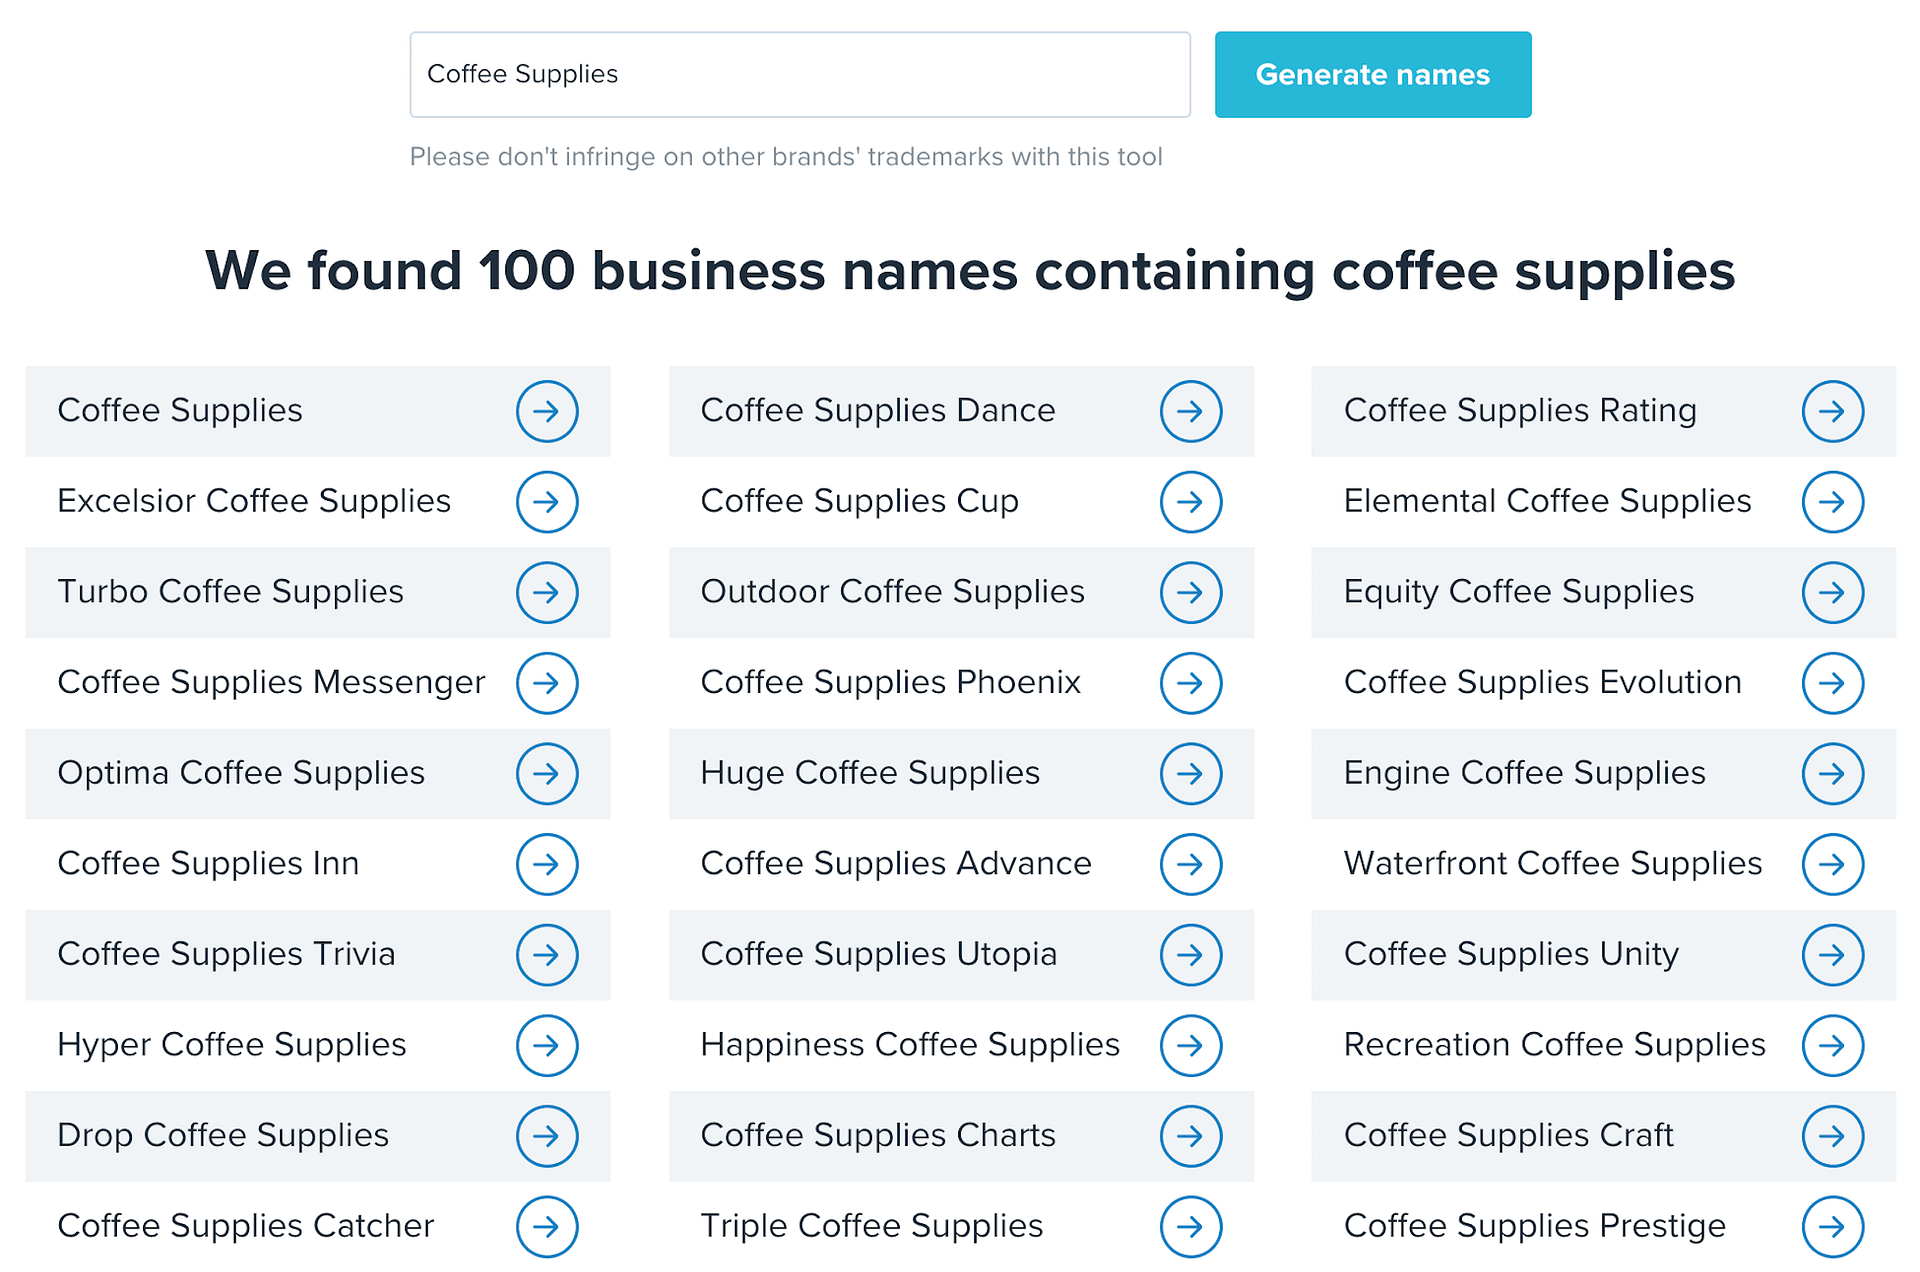 business name generator